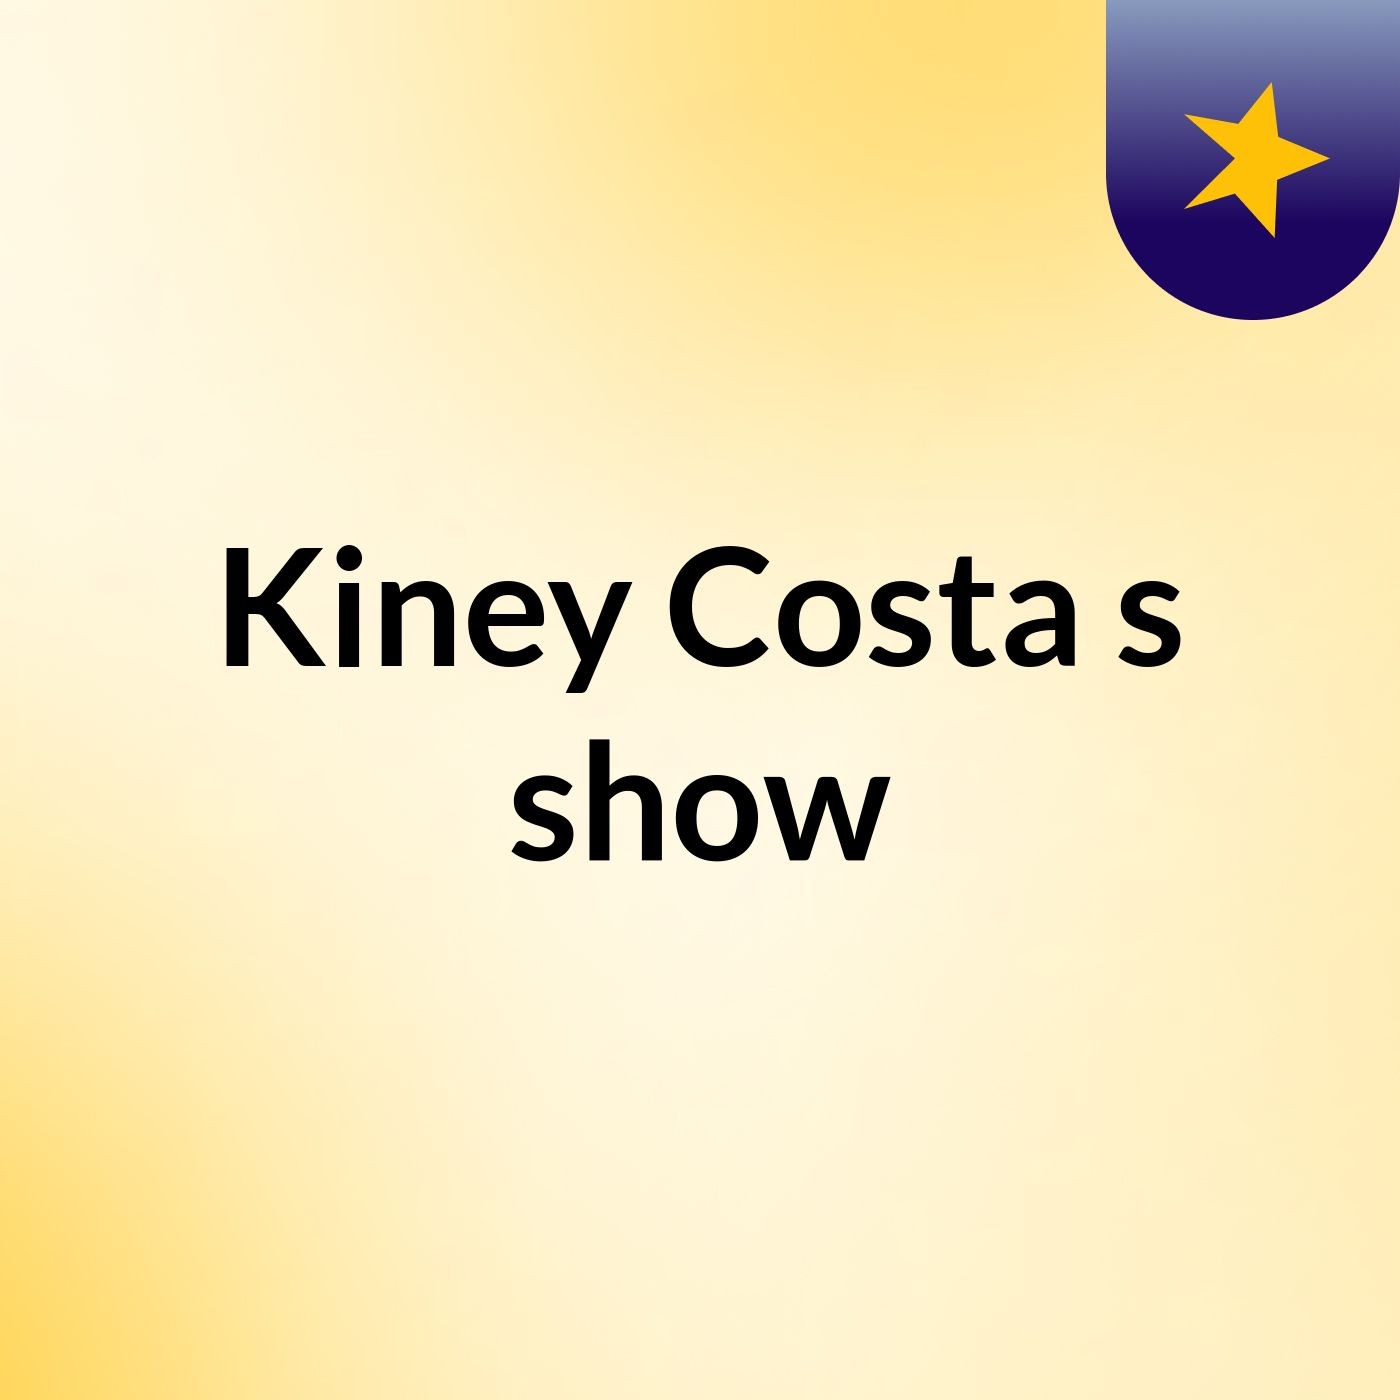 Kiney Costa's show